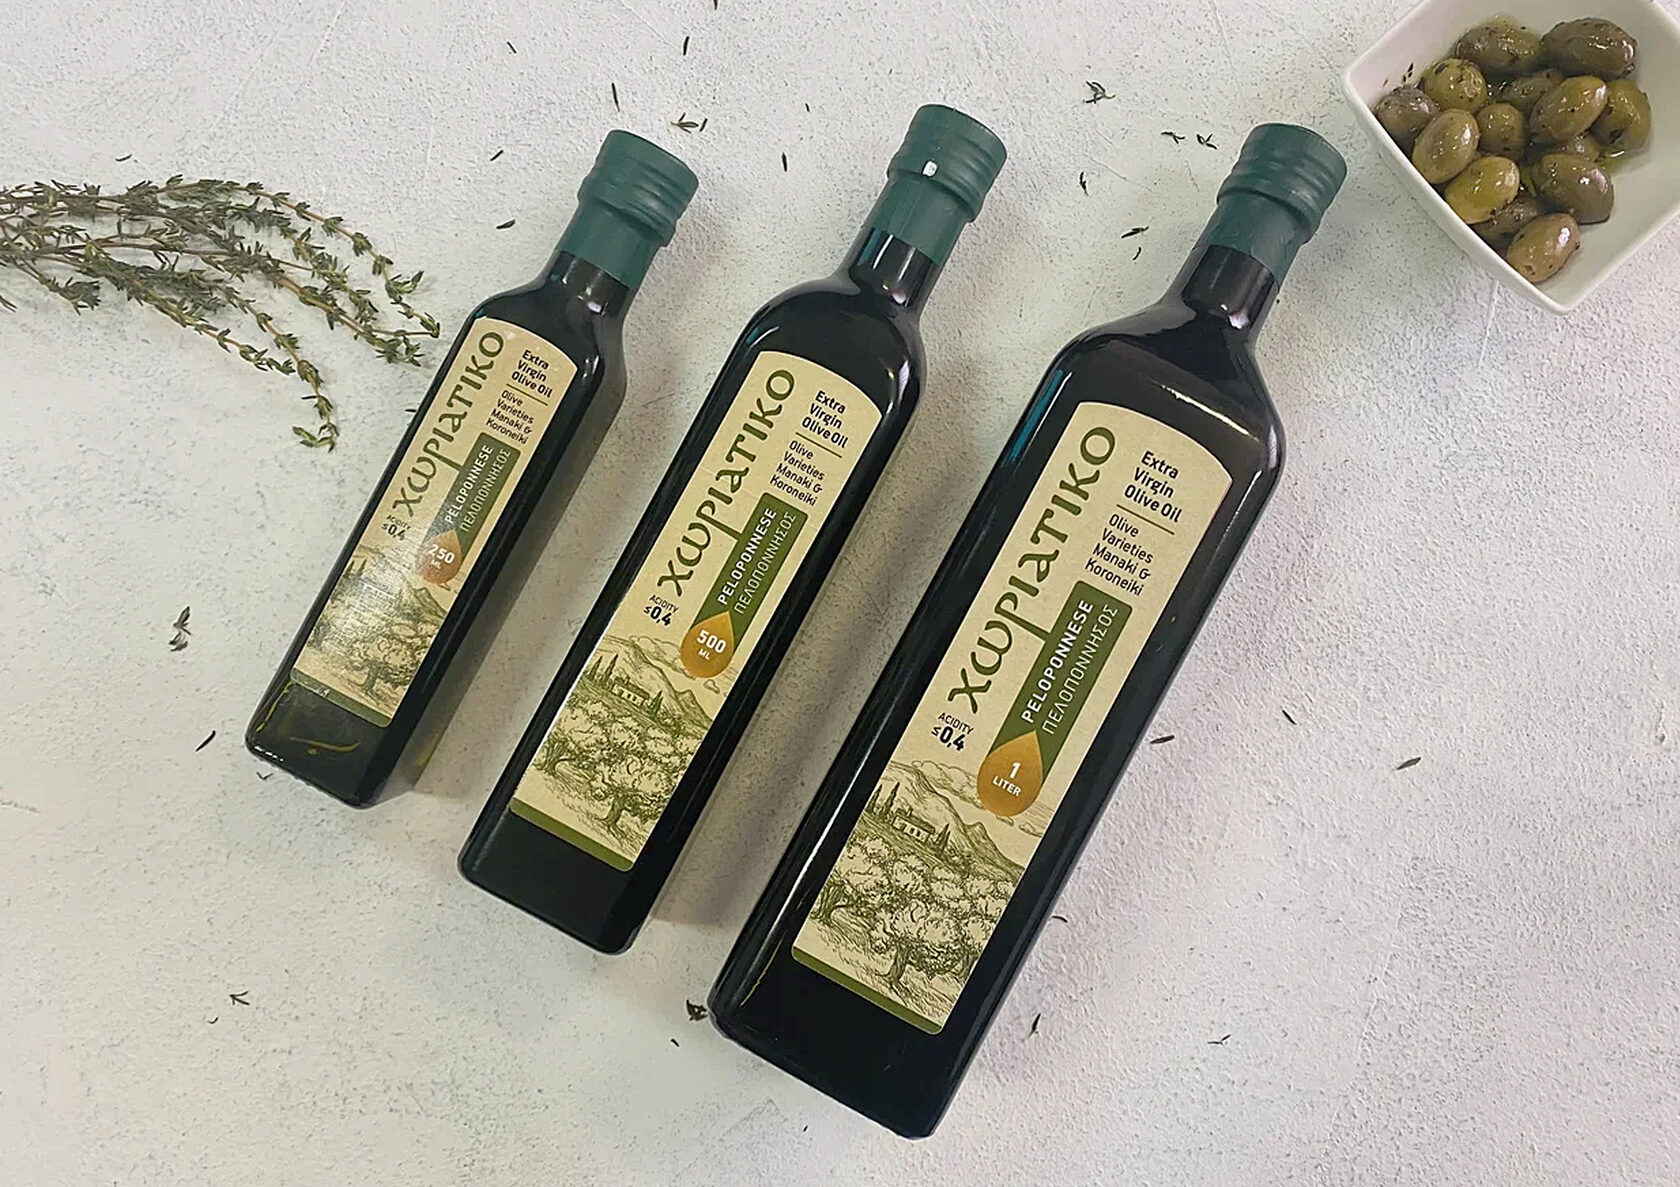 Оливковое масло нерафинированное первый холодный отжим